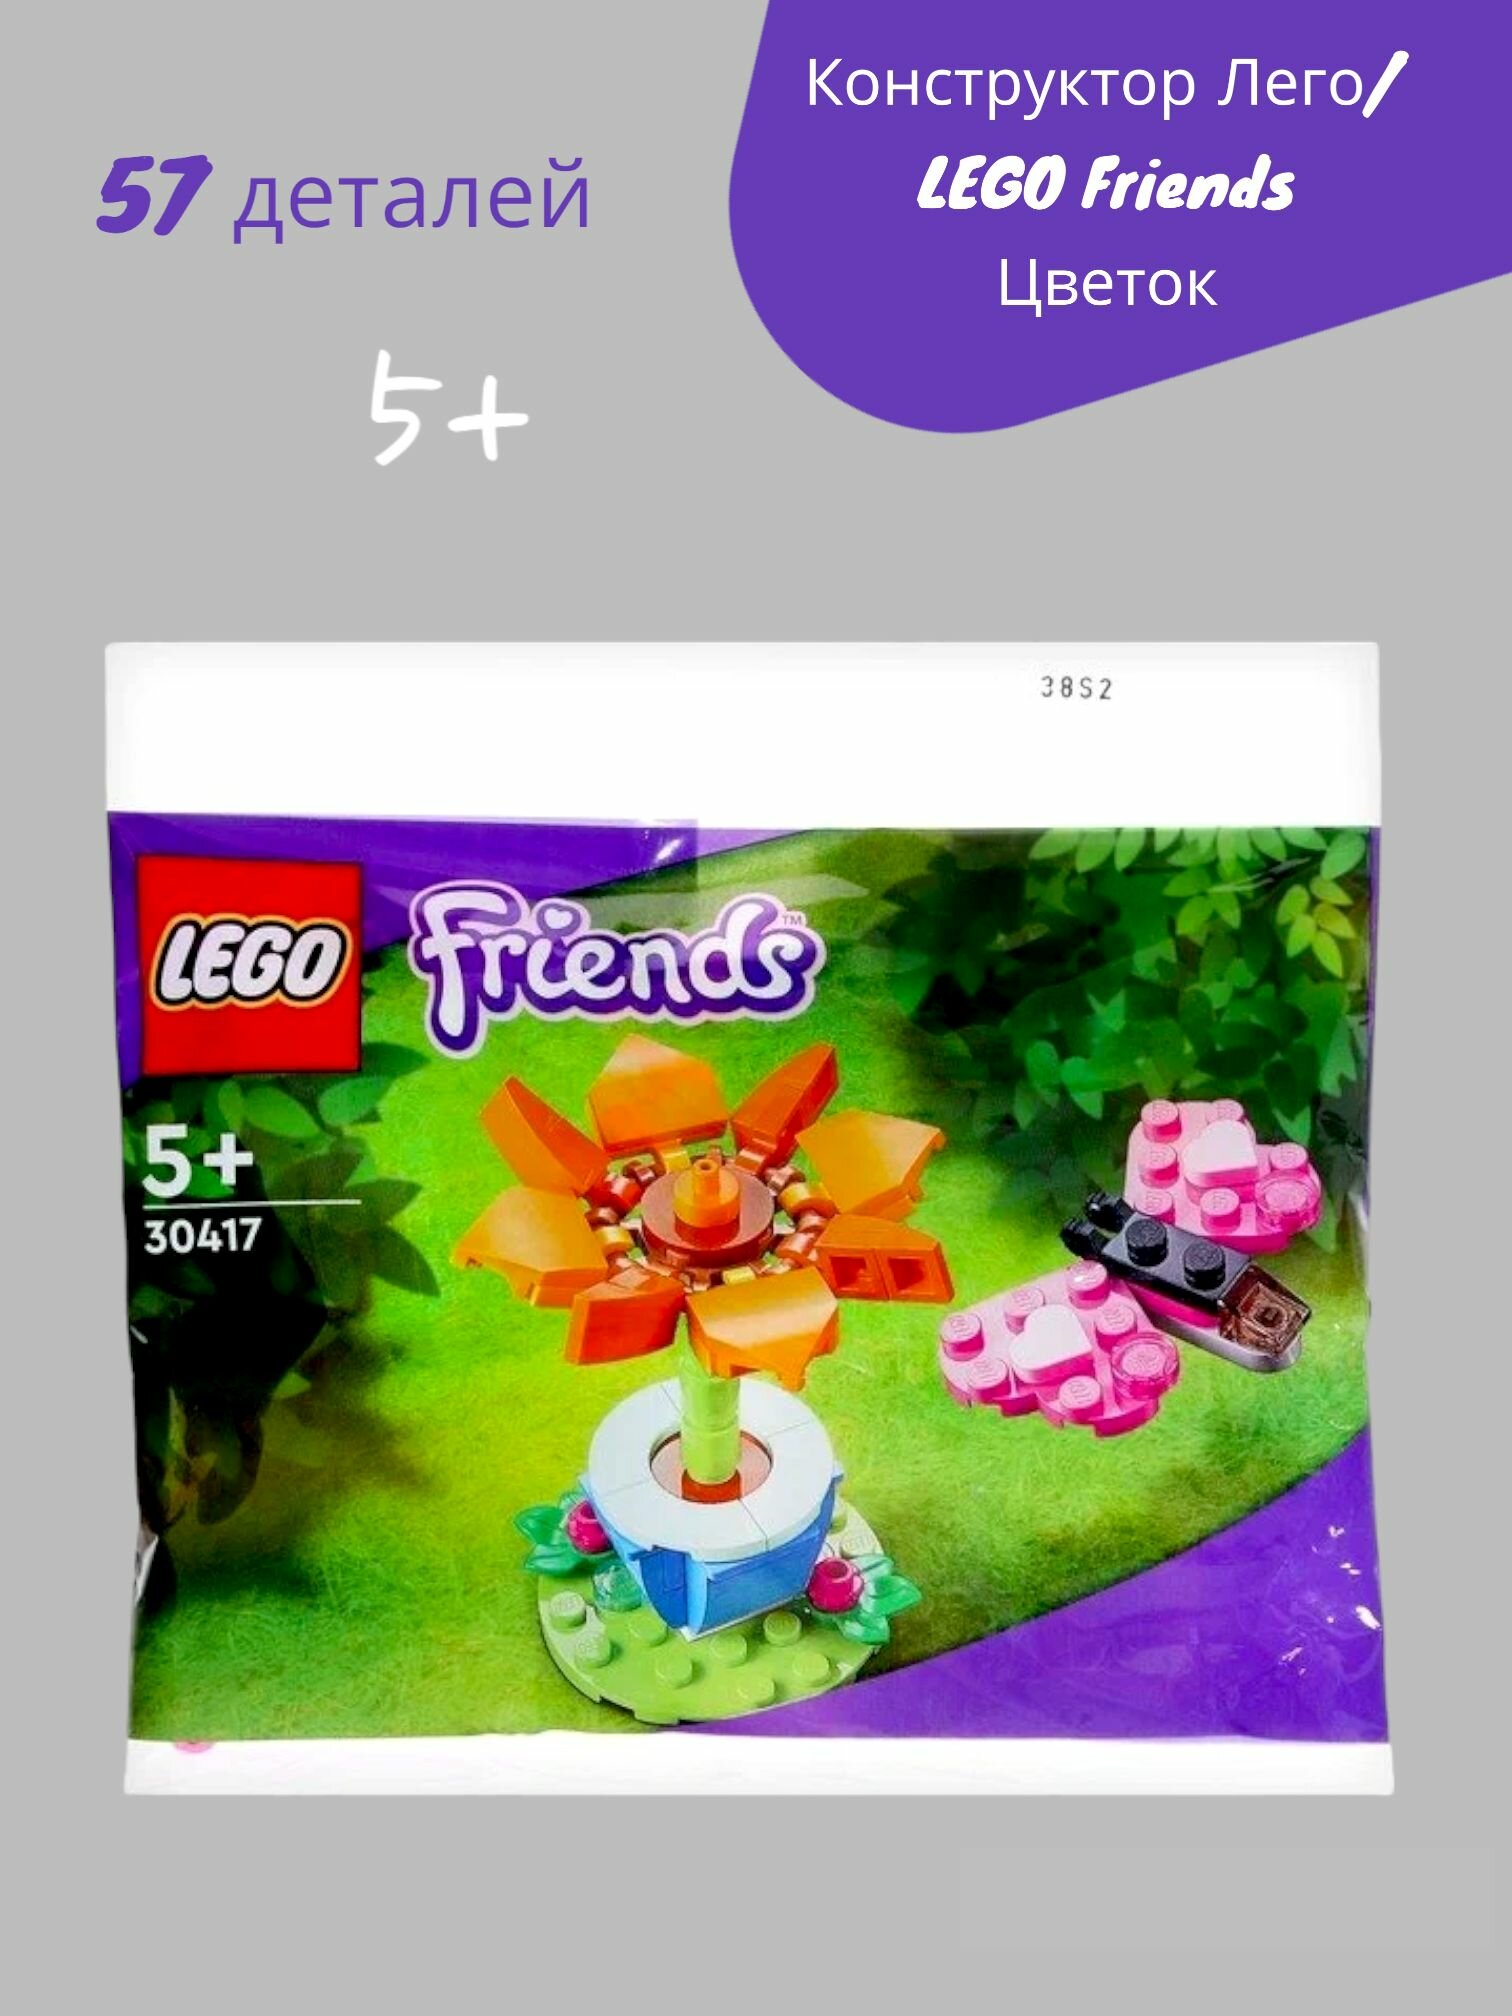 Конструктор Лего/LEGO Friends Цветок